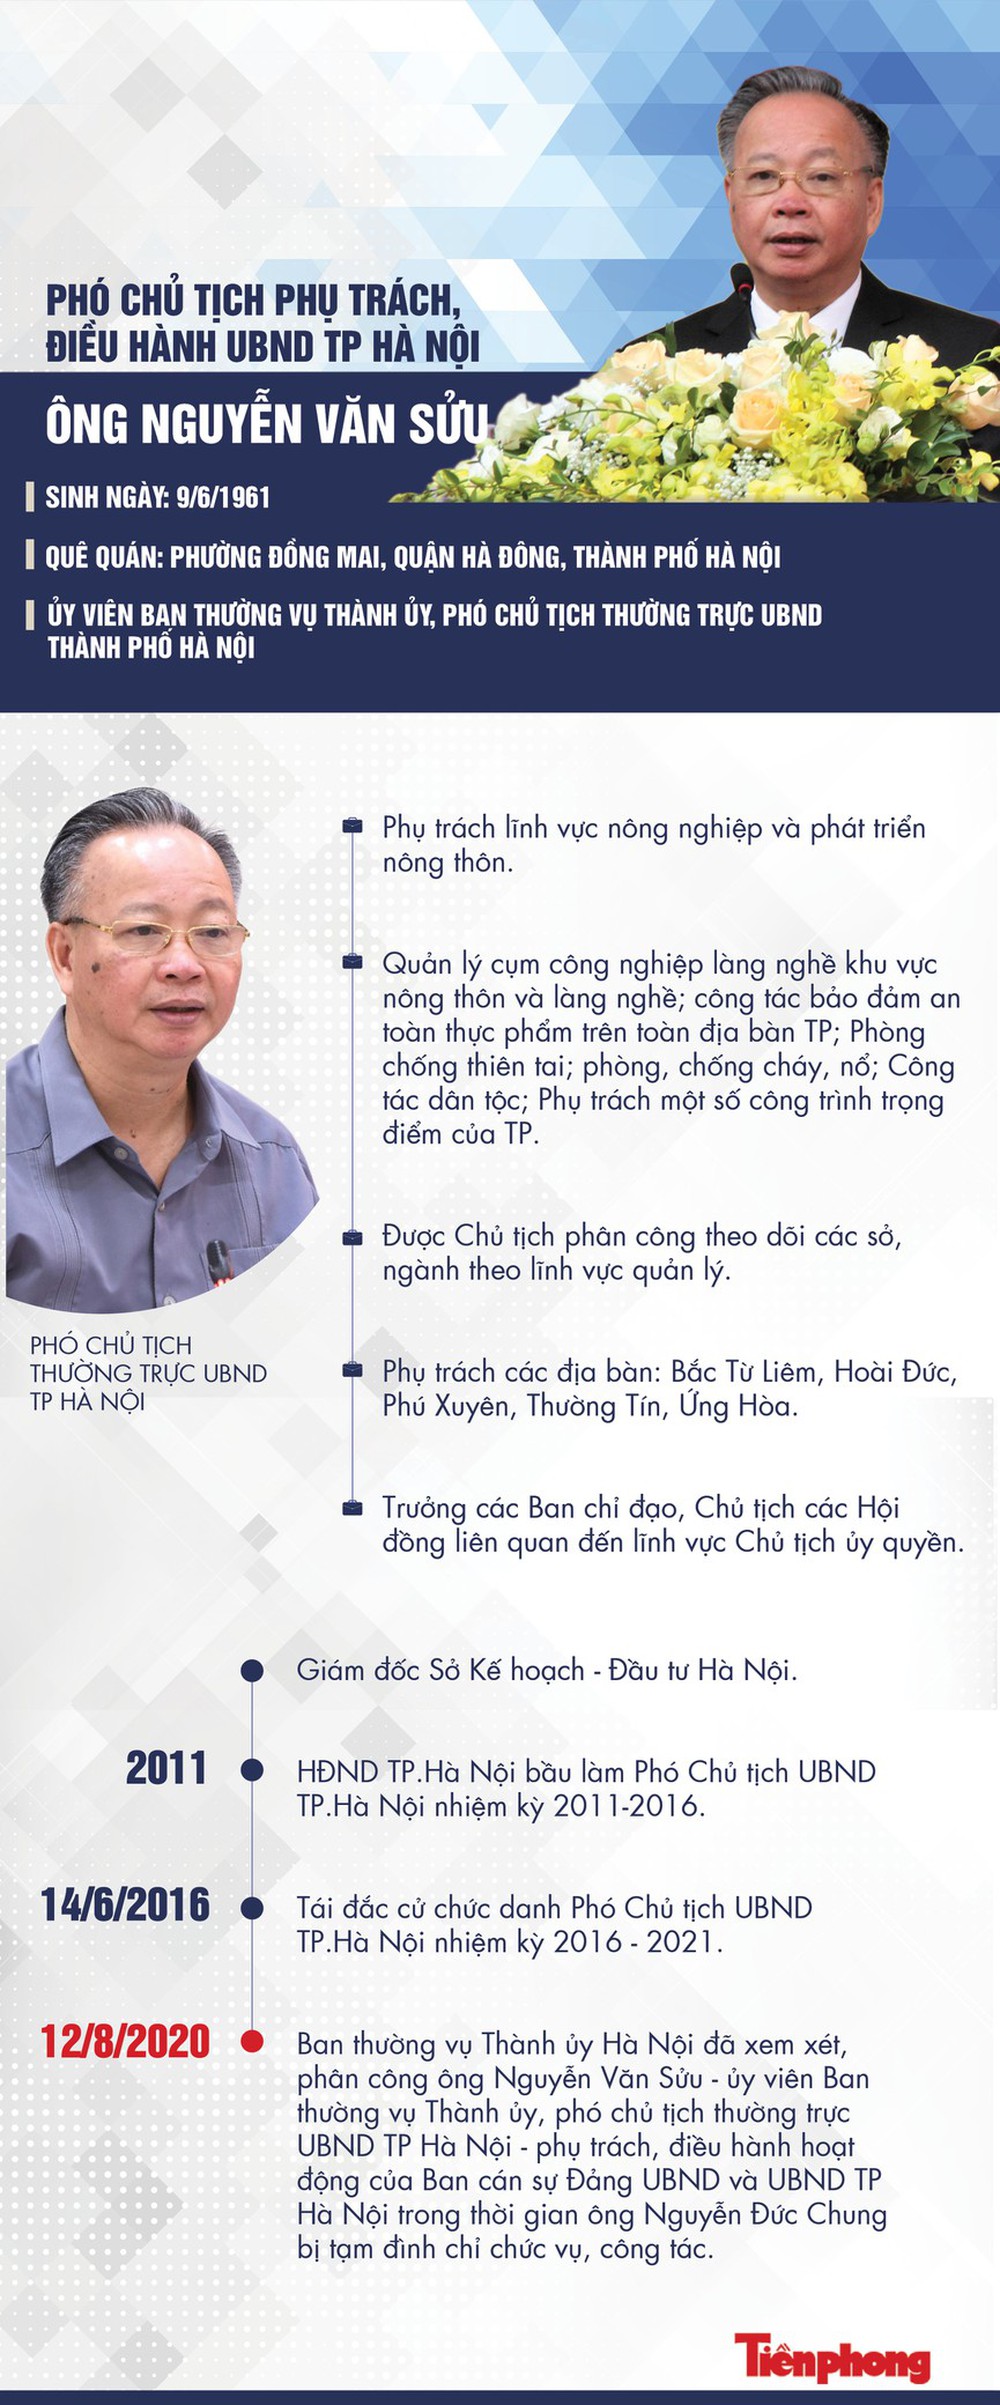 Chân dung người phụ trách, điều hành UBND Hà Nội thay ông Nguyễn Đức Chung - Ảnh 1.